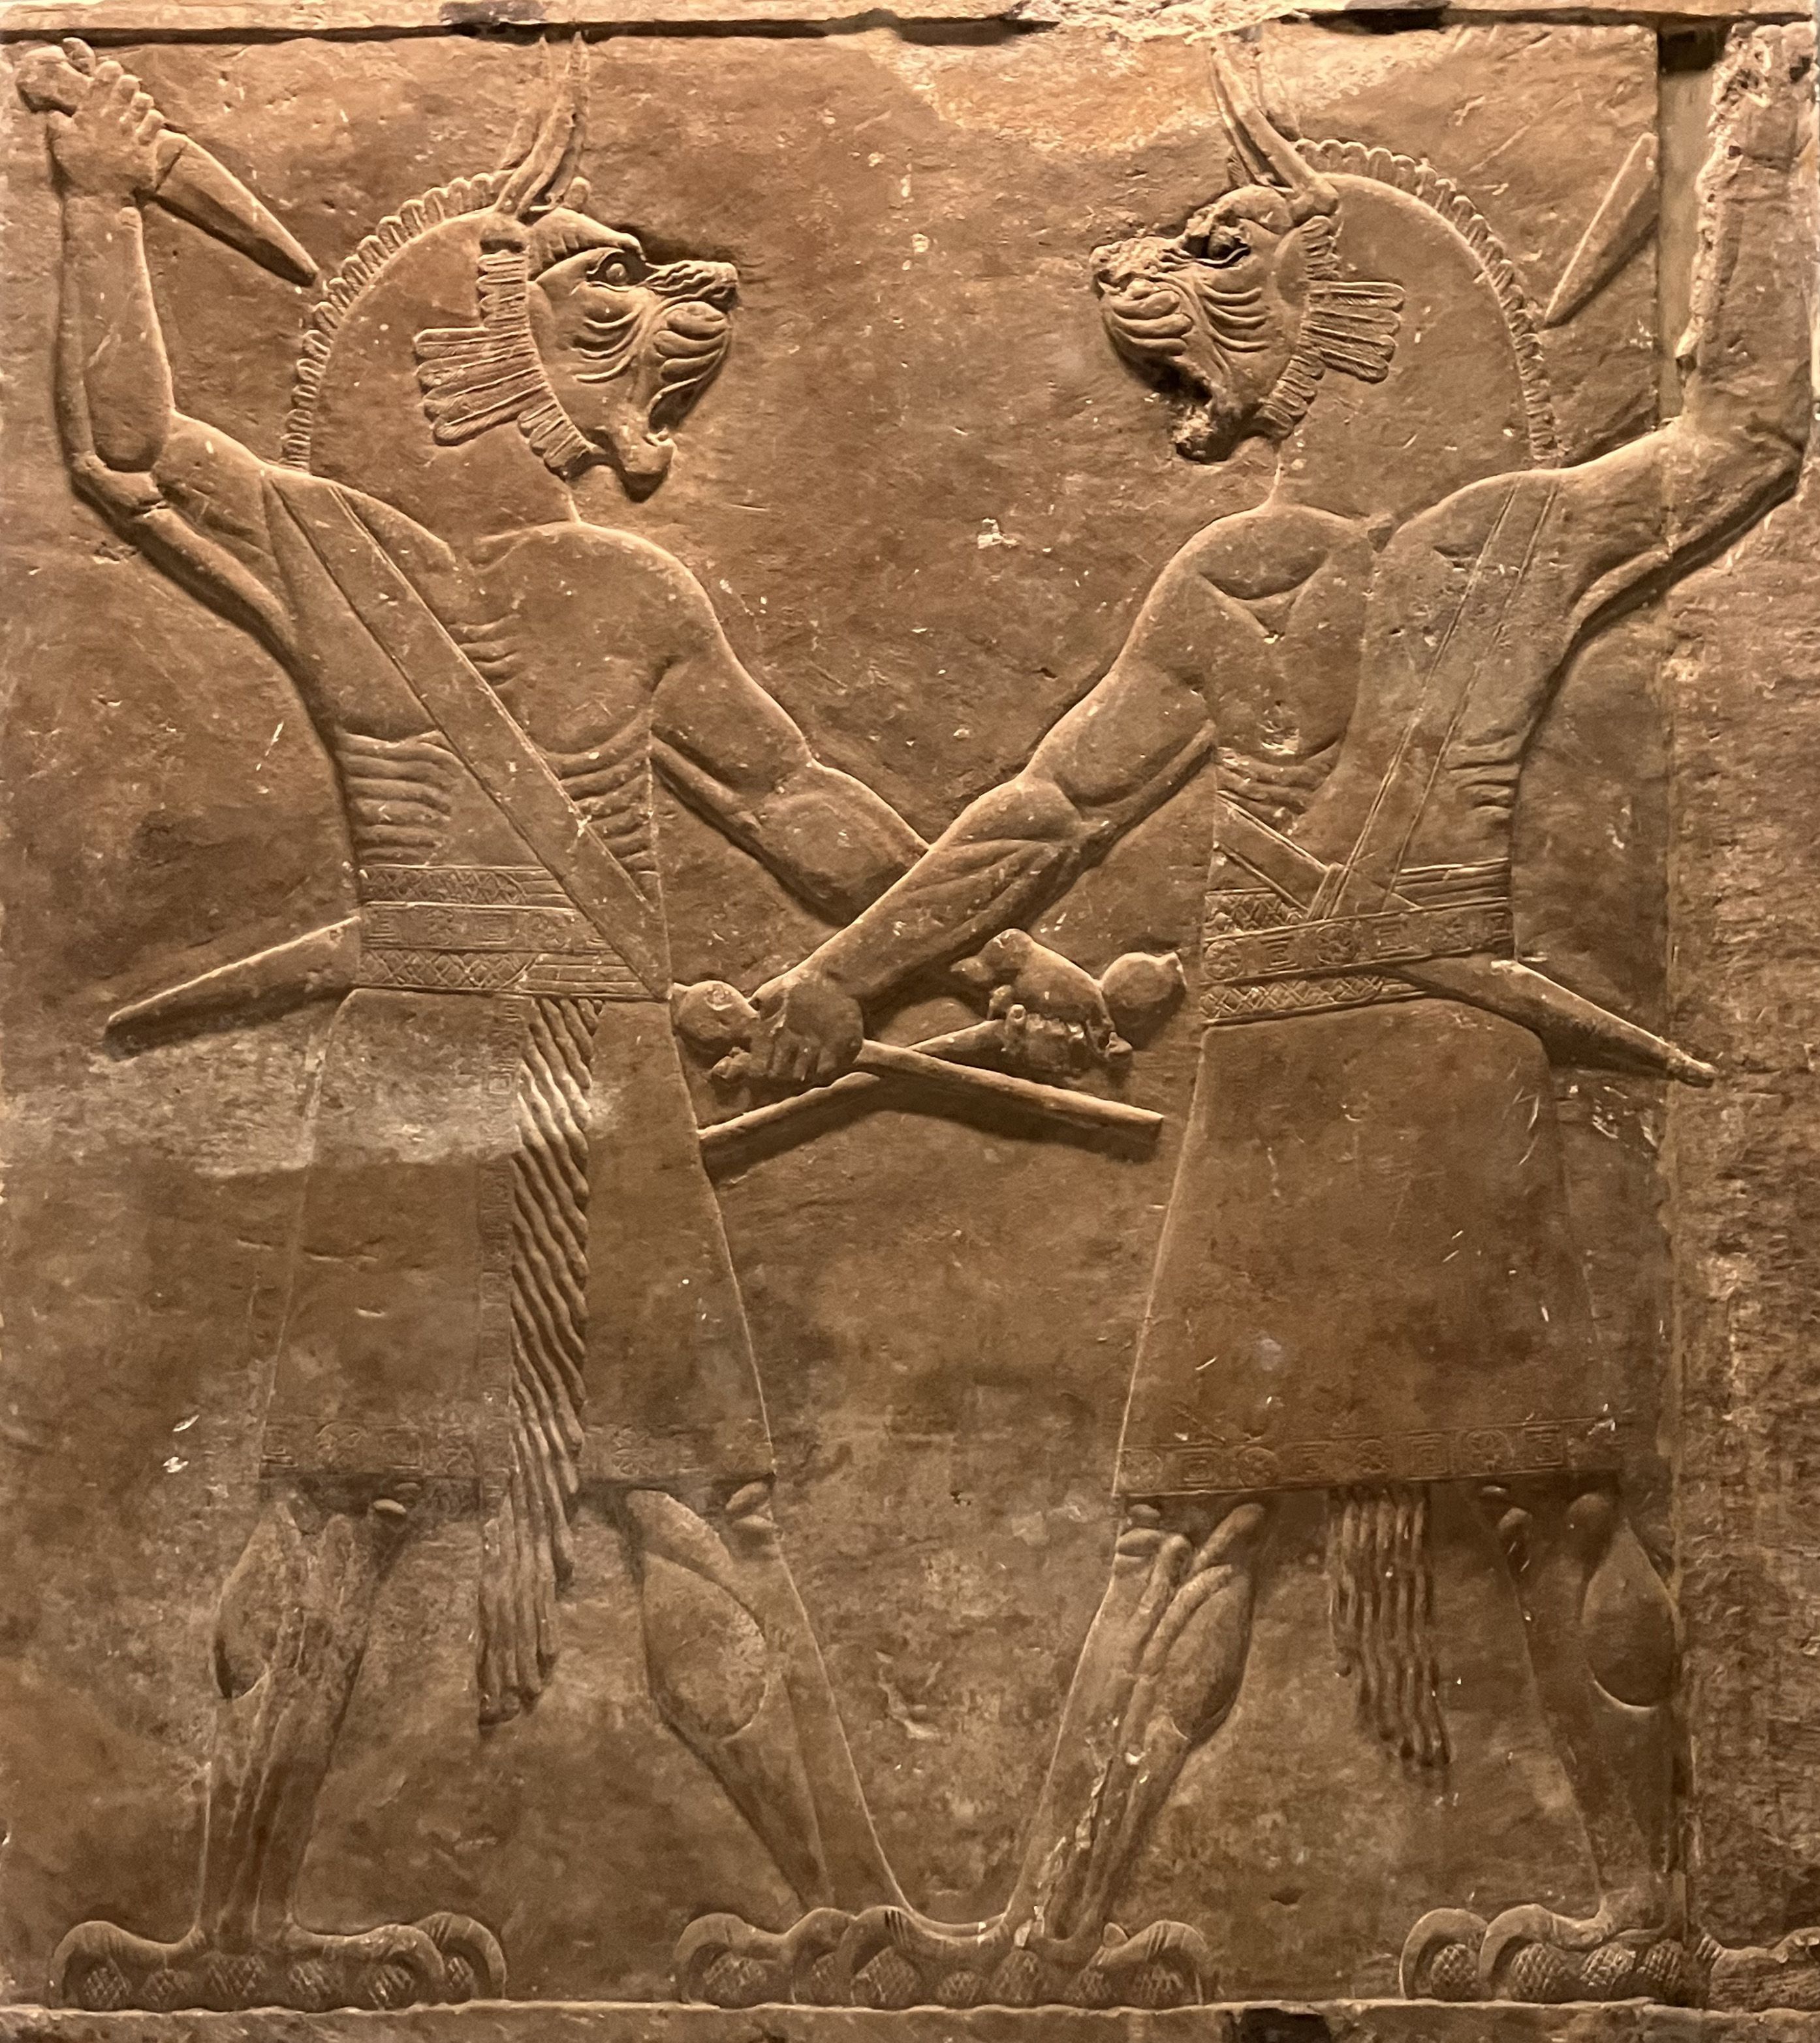 Unruhestifter und Kindsmörder - Dämonen und andere böse Wesen in den koptischen magischen Papyri 